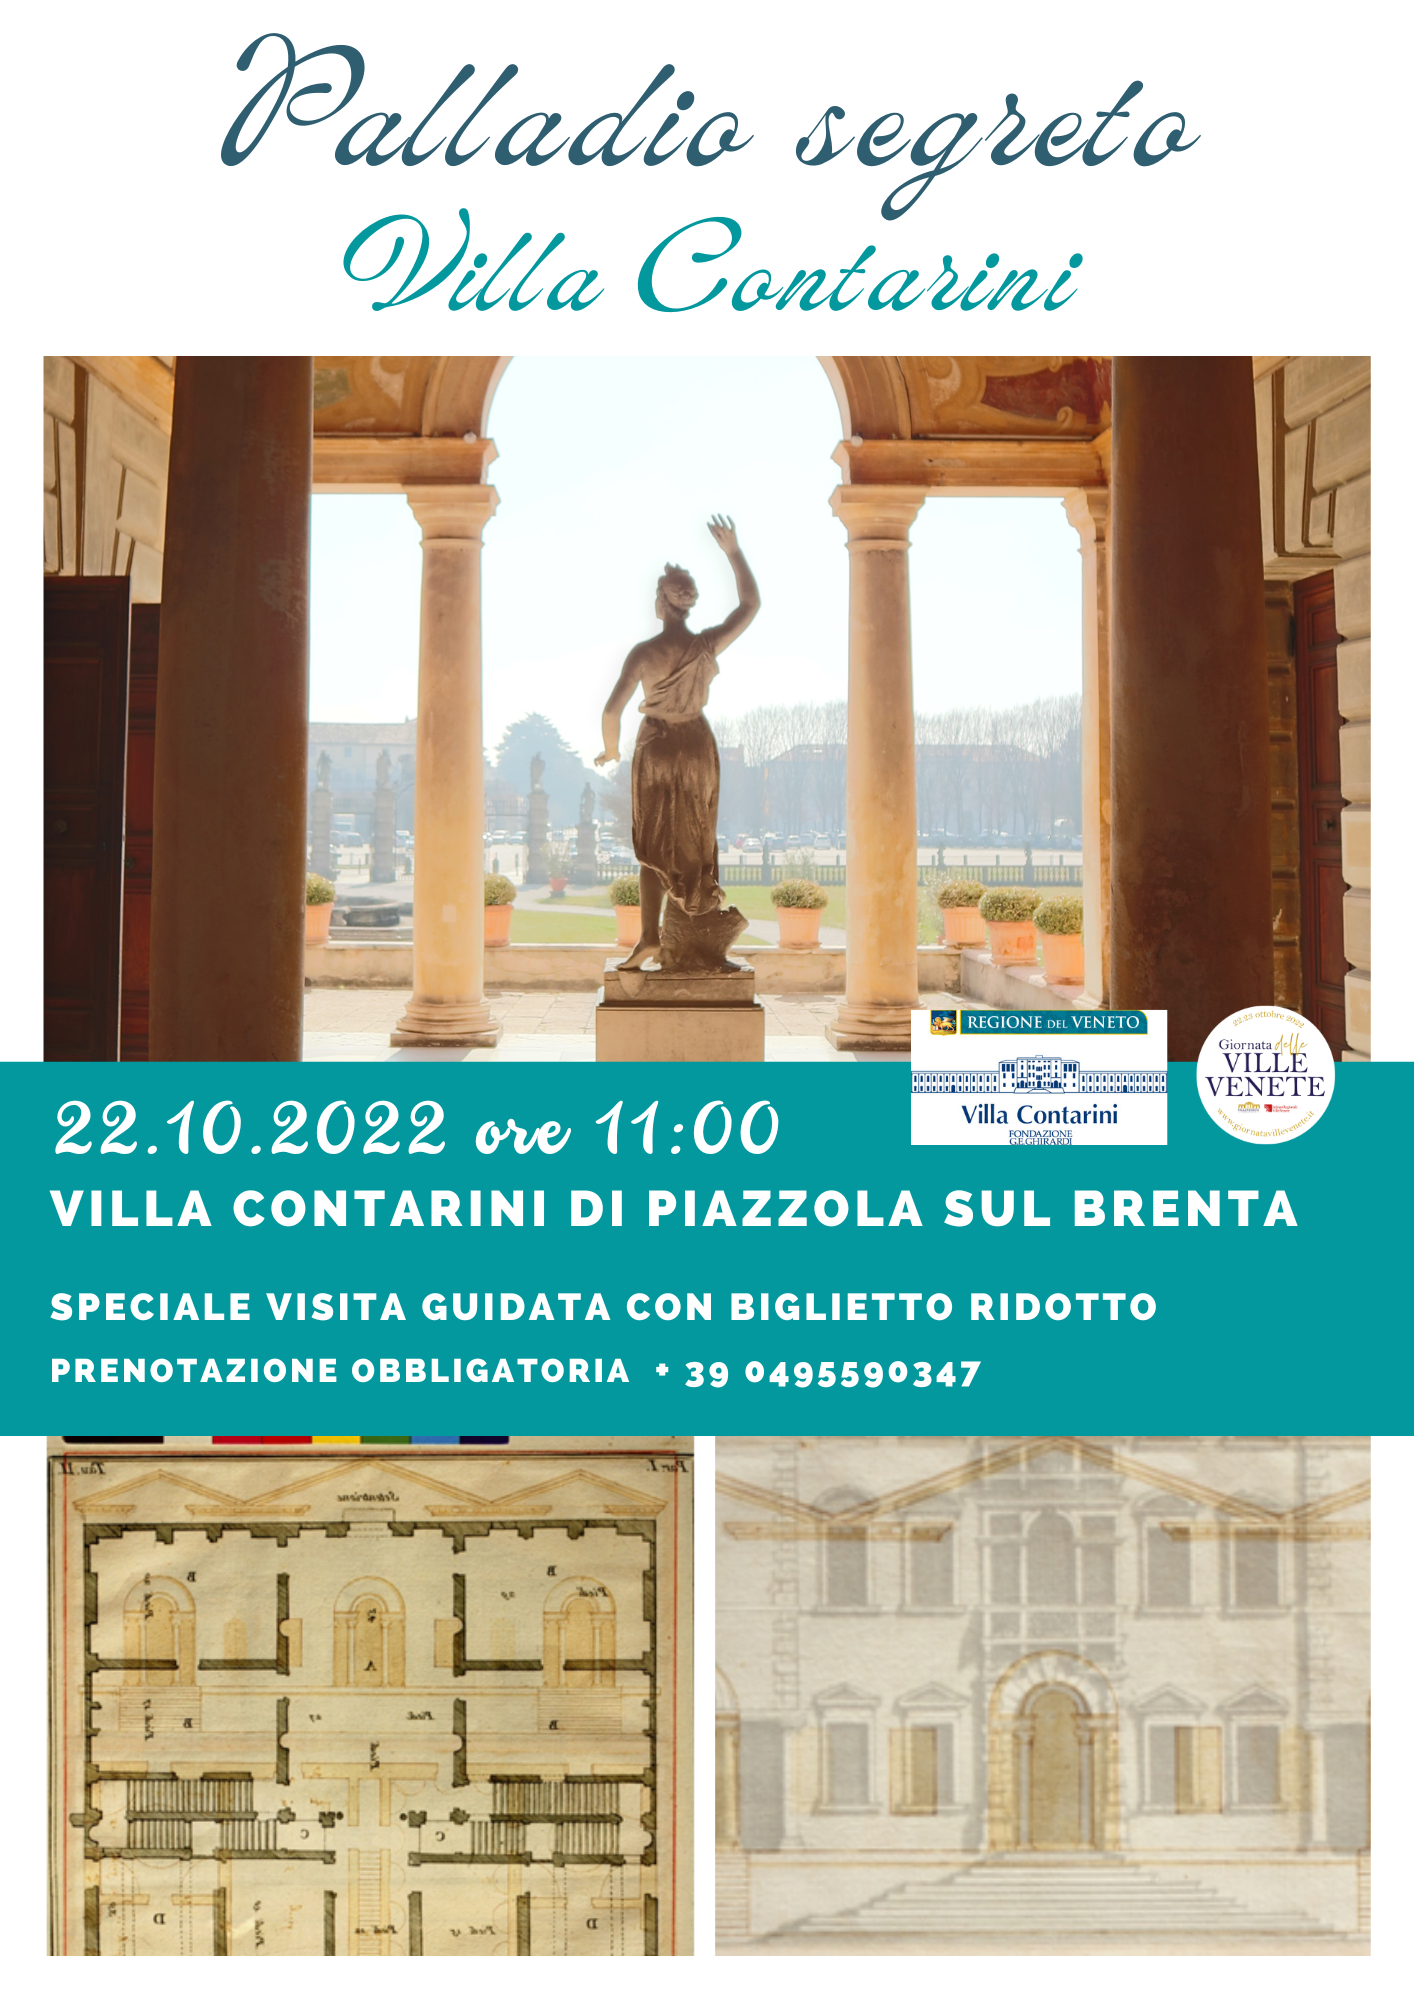 22.10.2022 Visita guidata speciale “Palladio segreto: Villa Contarini”